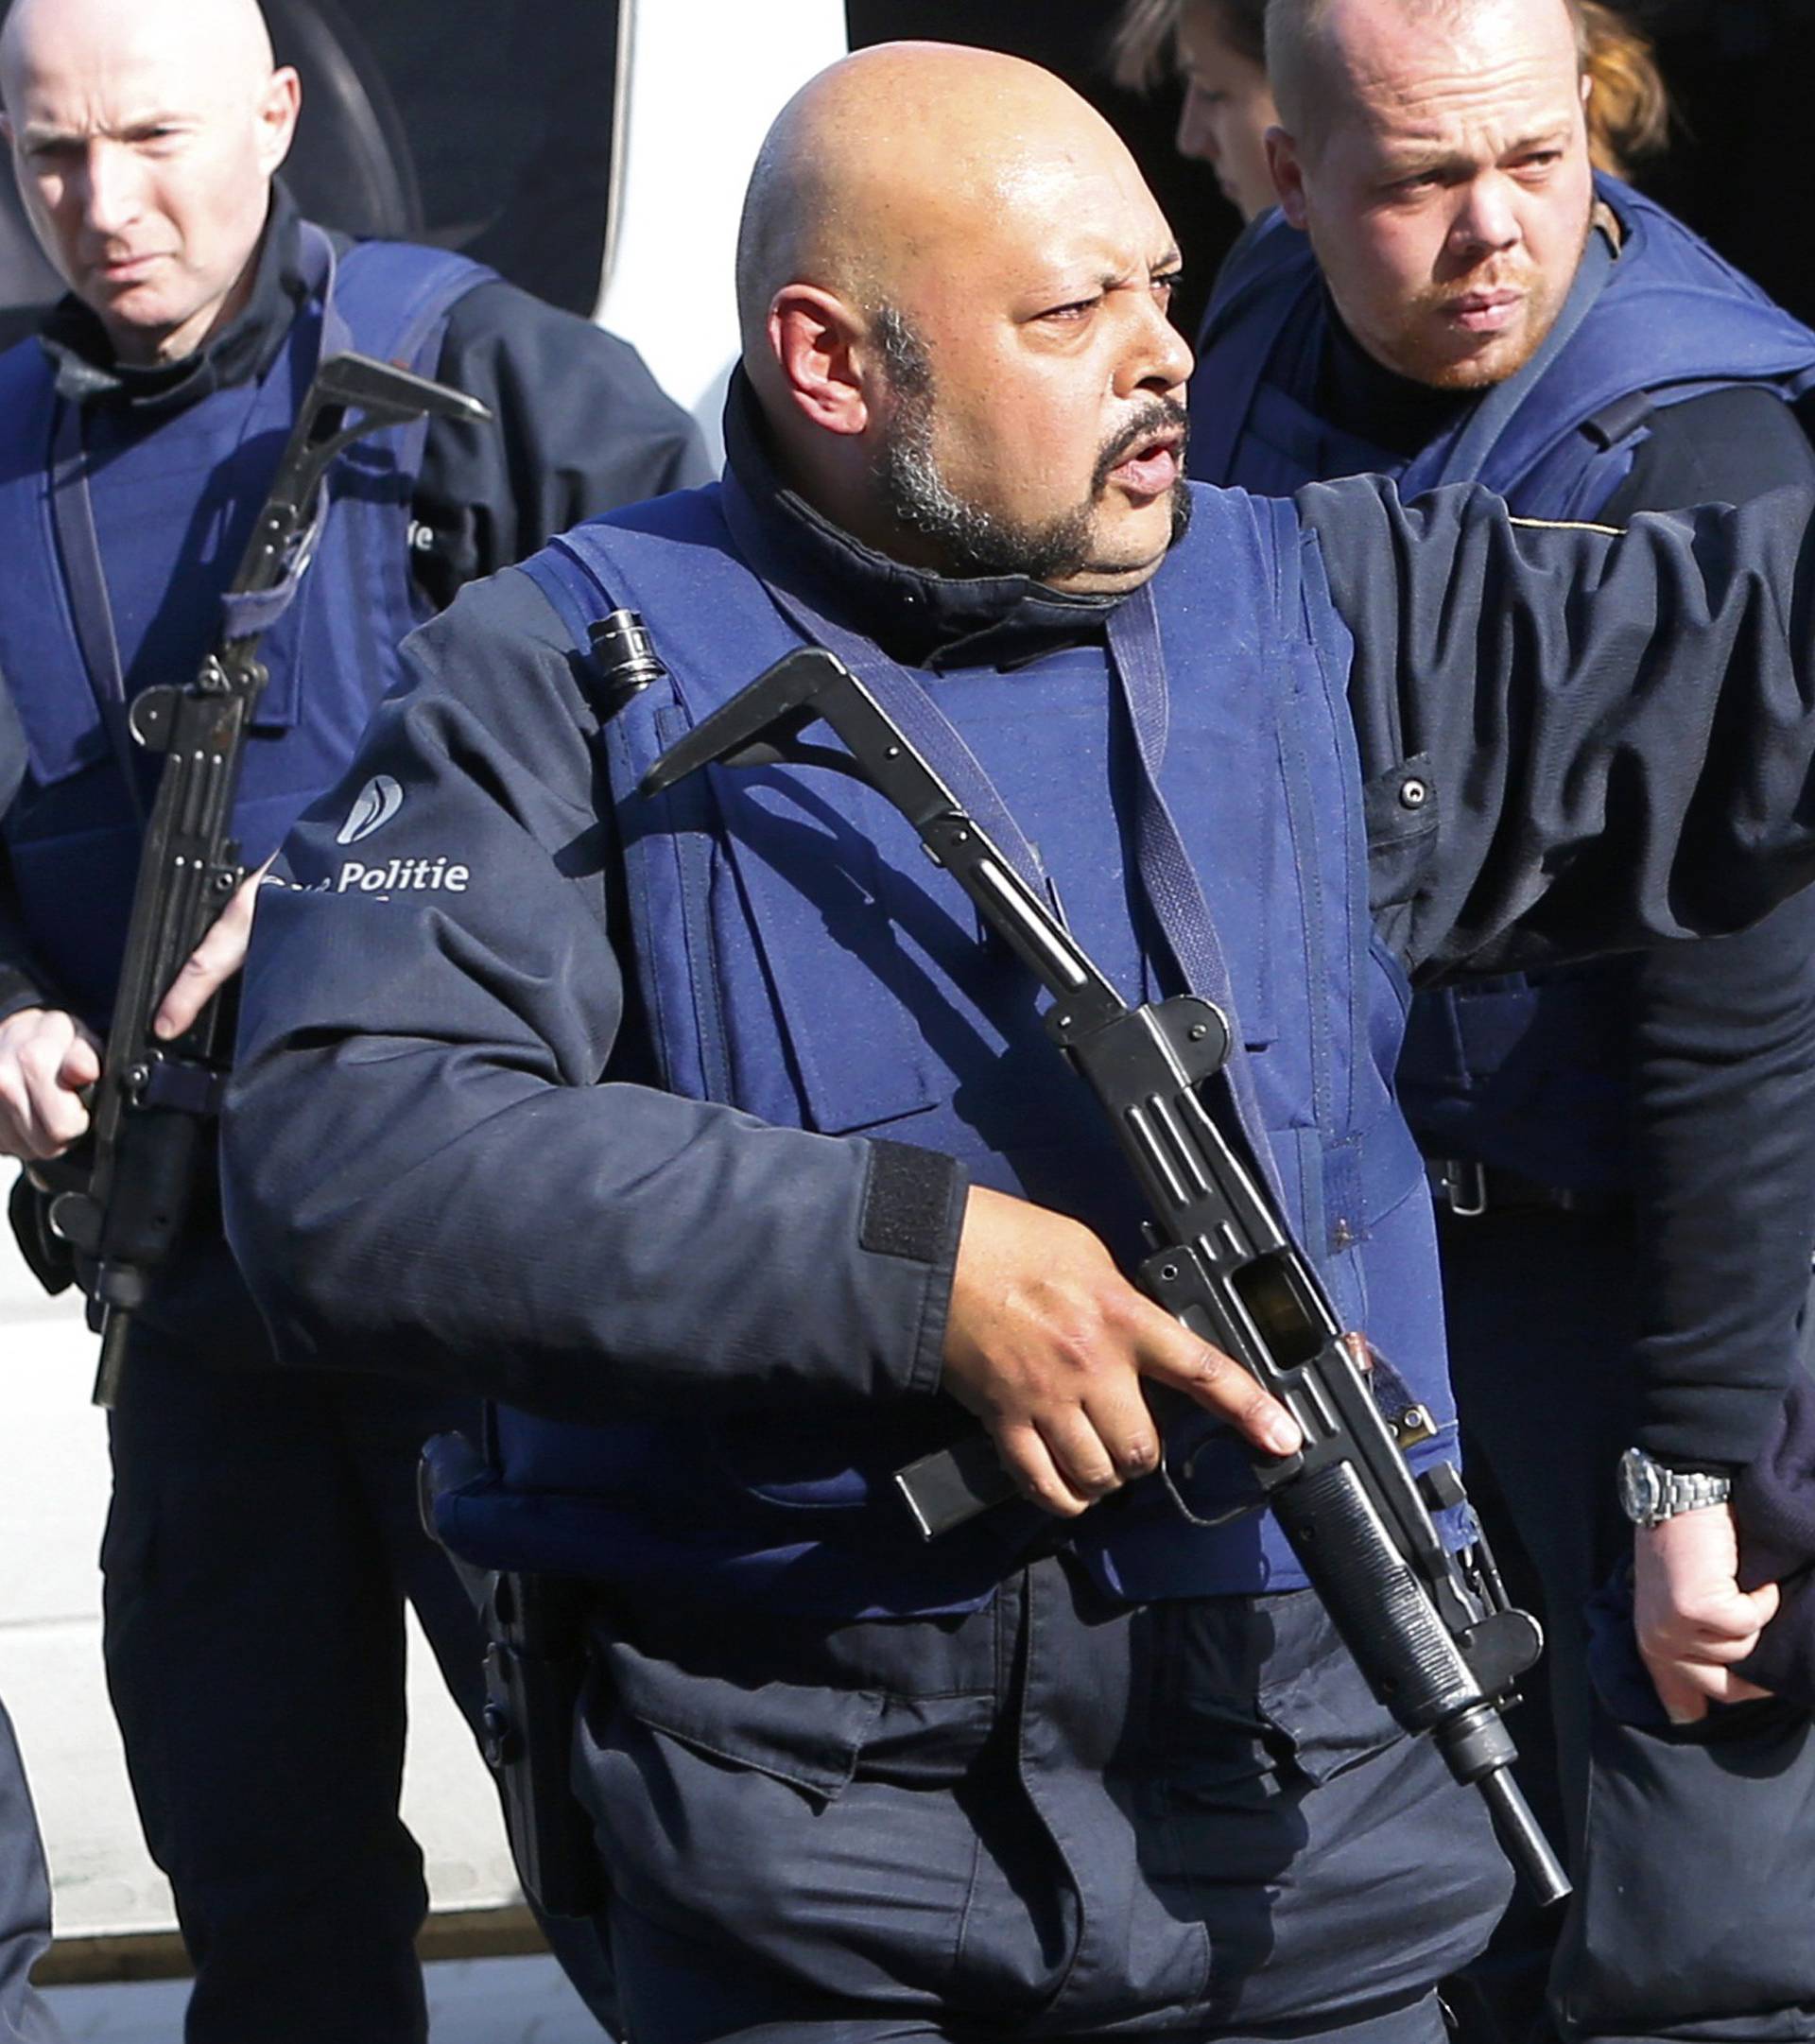 'U Bruxellesu je ubijen  jedan džihadist, ali to nije  Abdeslam'